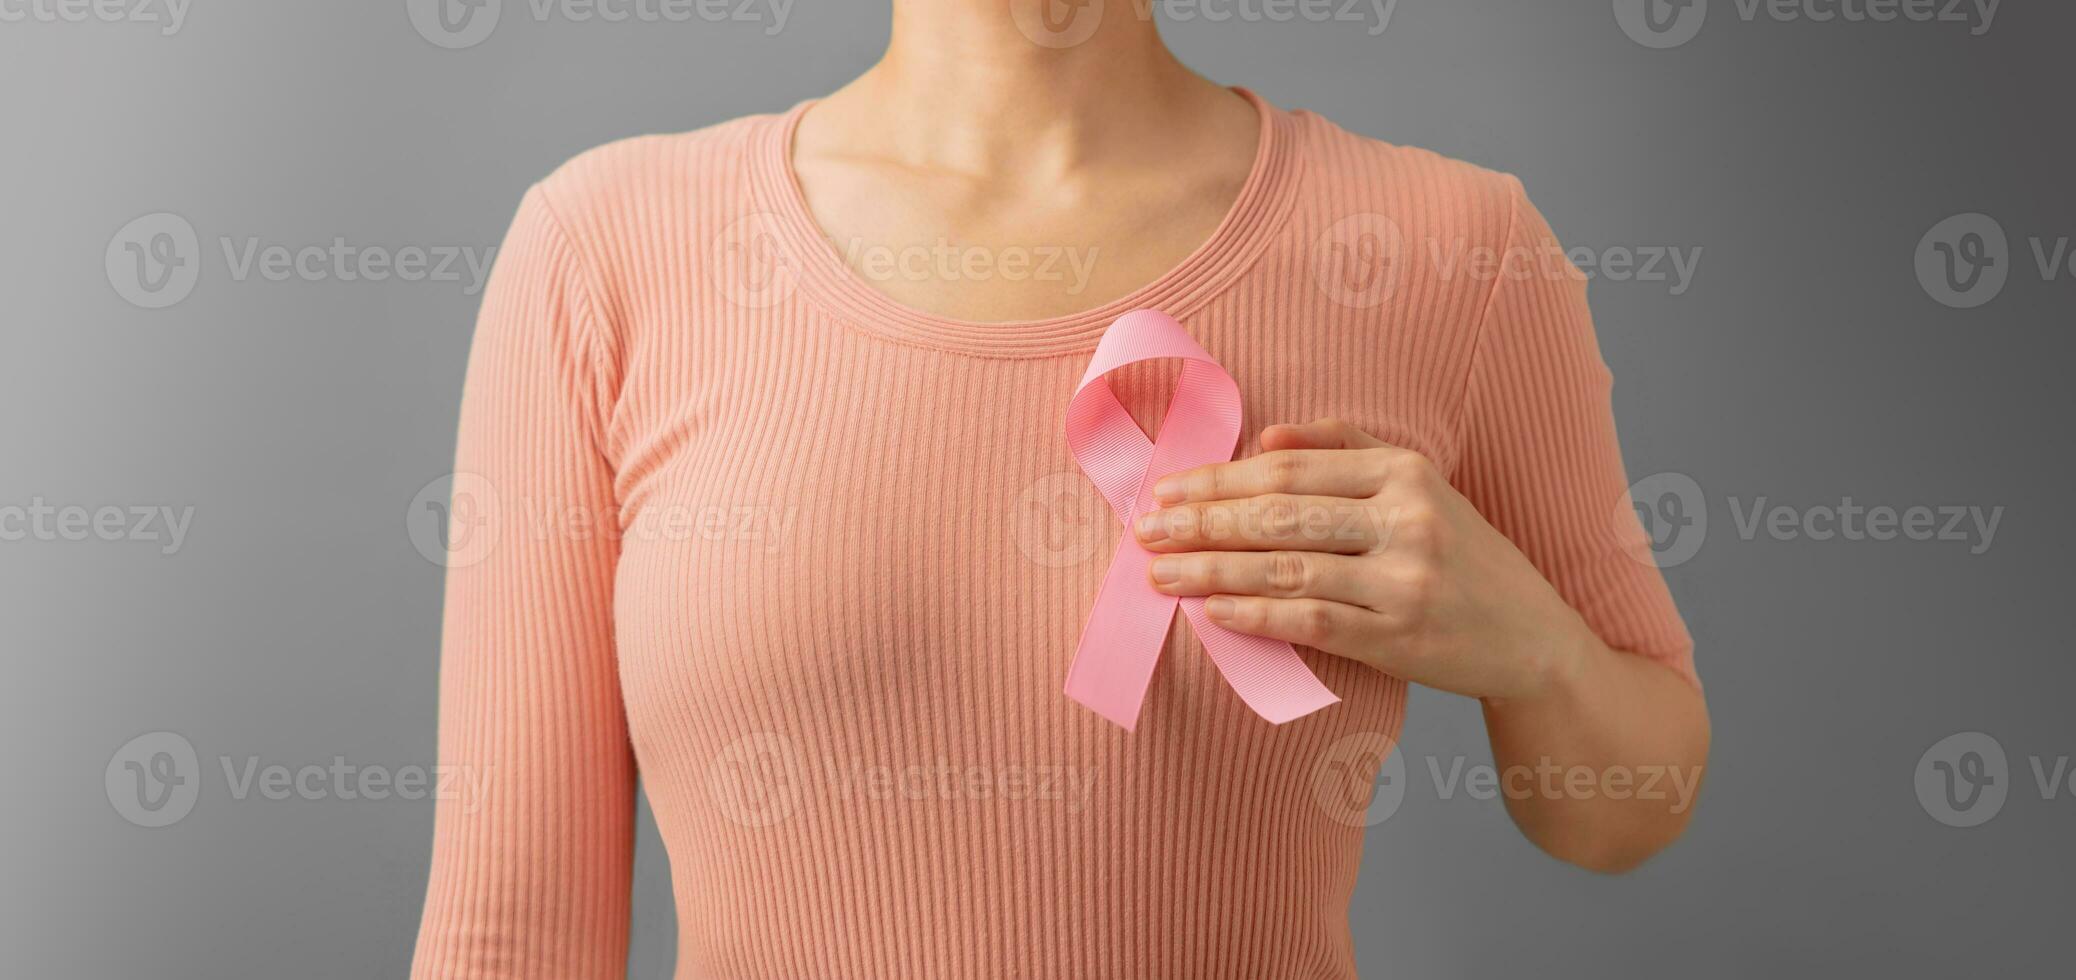 pecho cáncer conciencia Campaña concepto. mujer cuidado de la salud. cerca arriba de un joven hembra conmovedor rosado cinta en su tórax foto